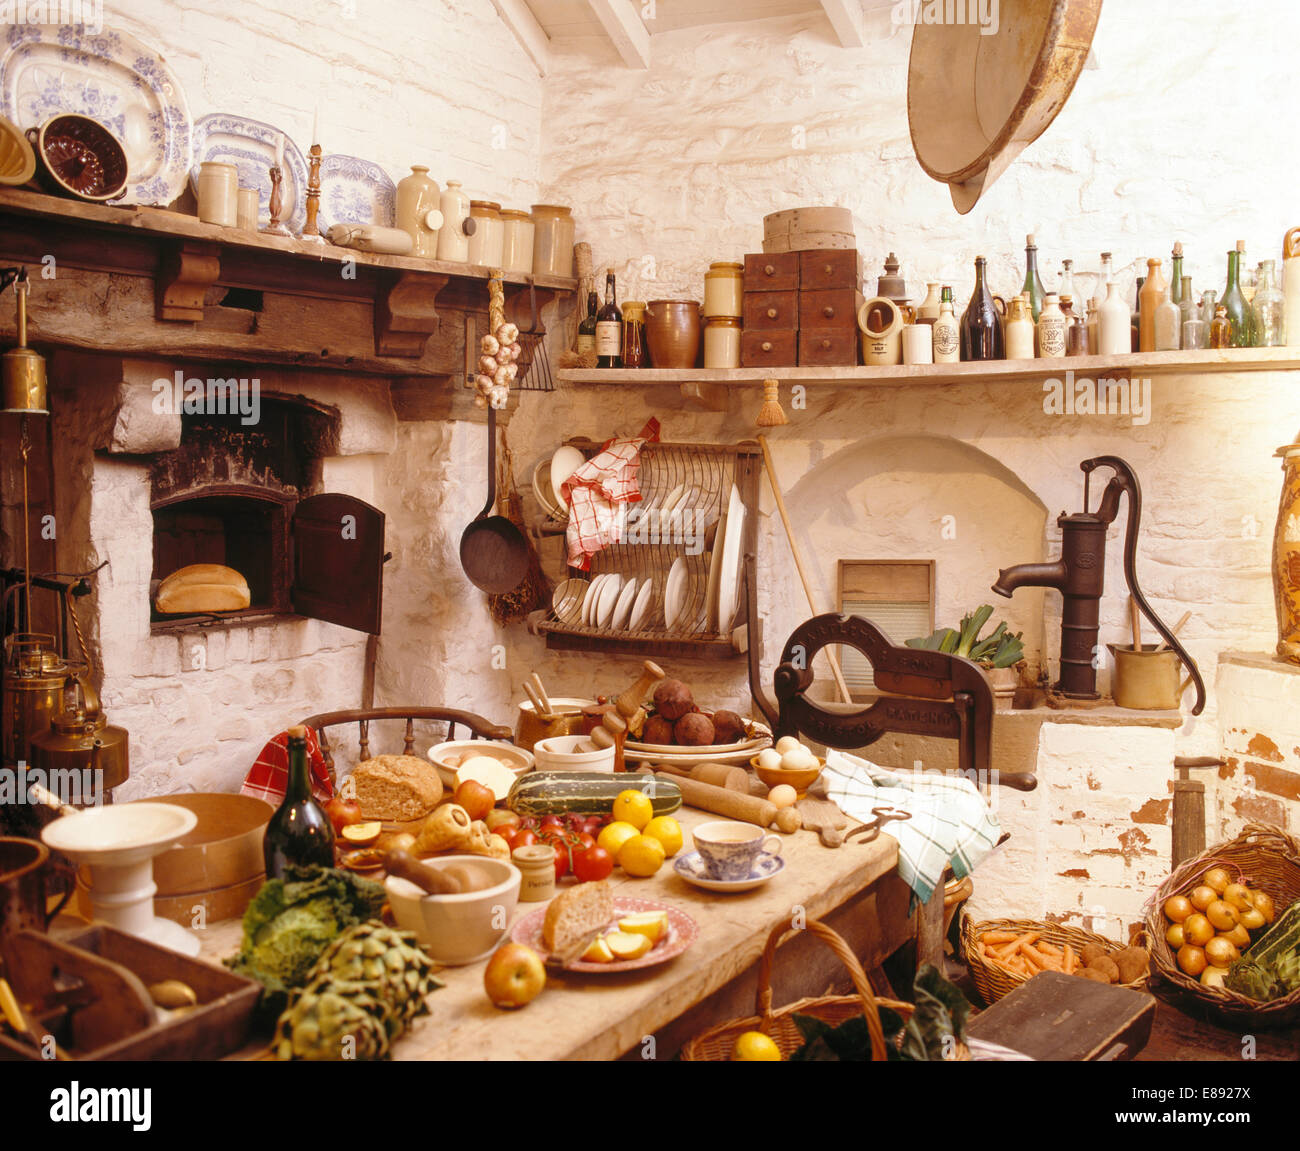 Tisch mit Essen in überfüllten alten altmodischen Küche Stockfoto